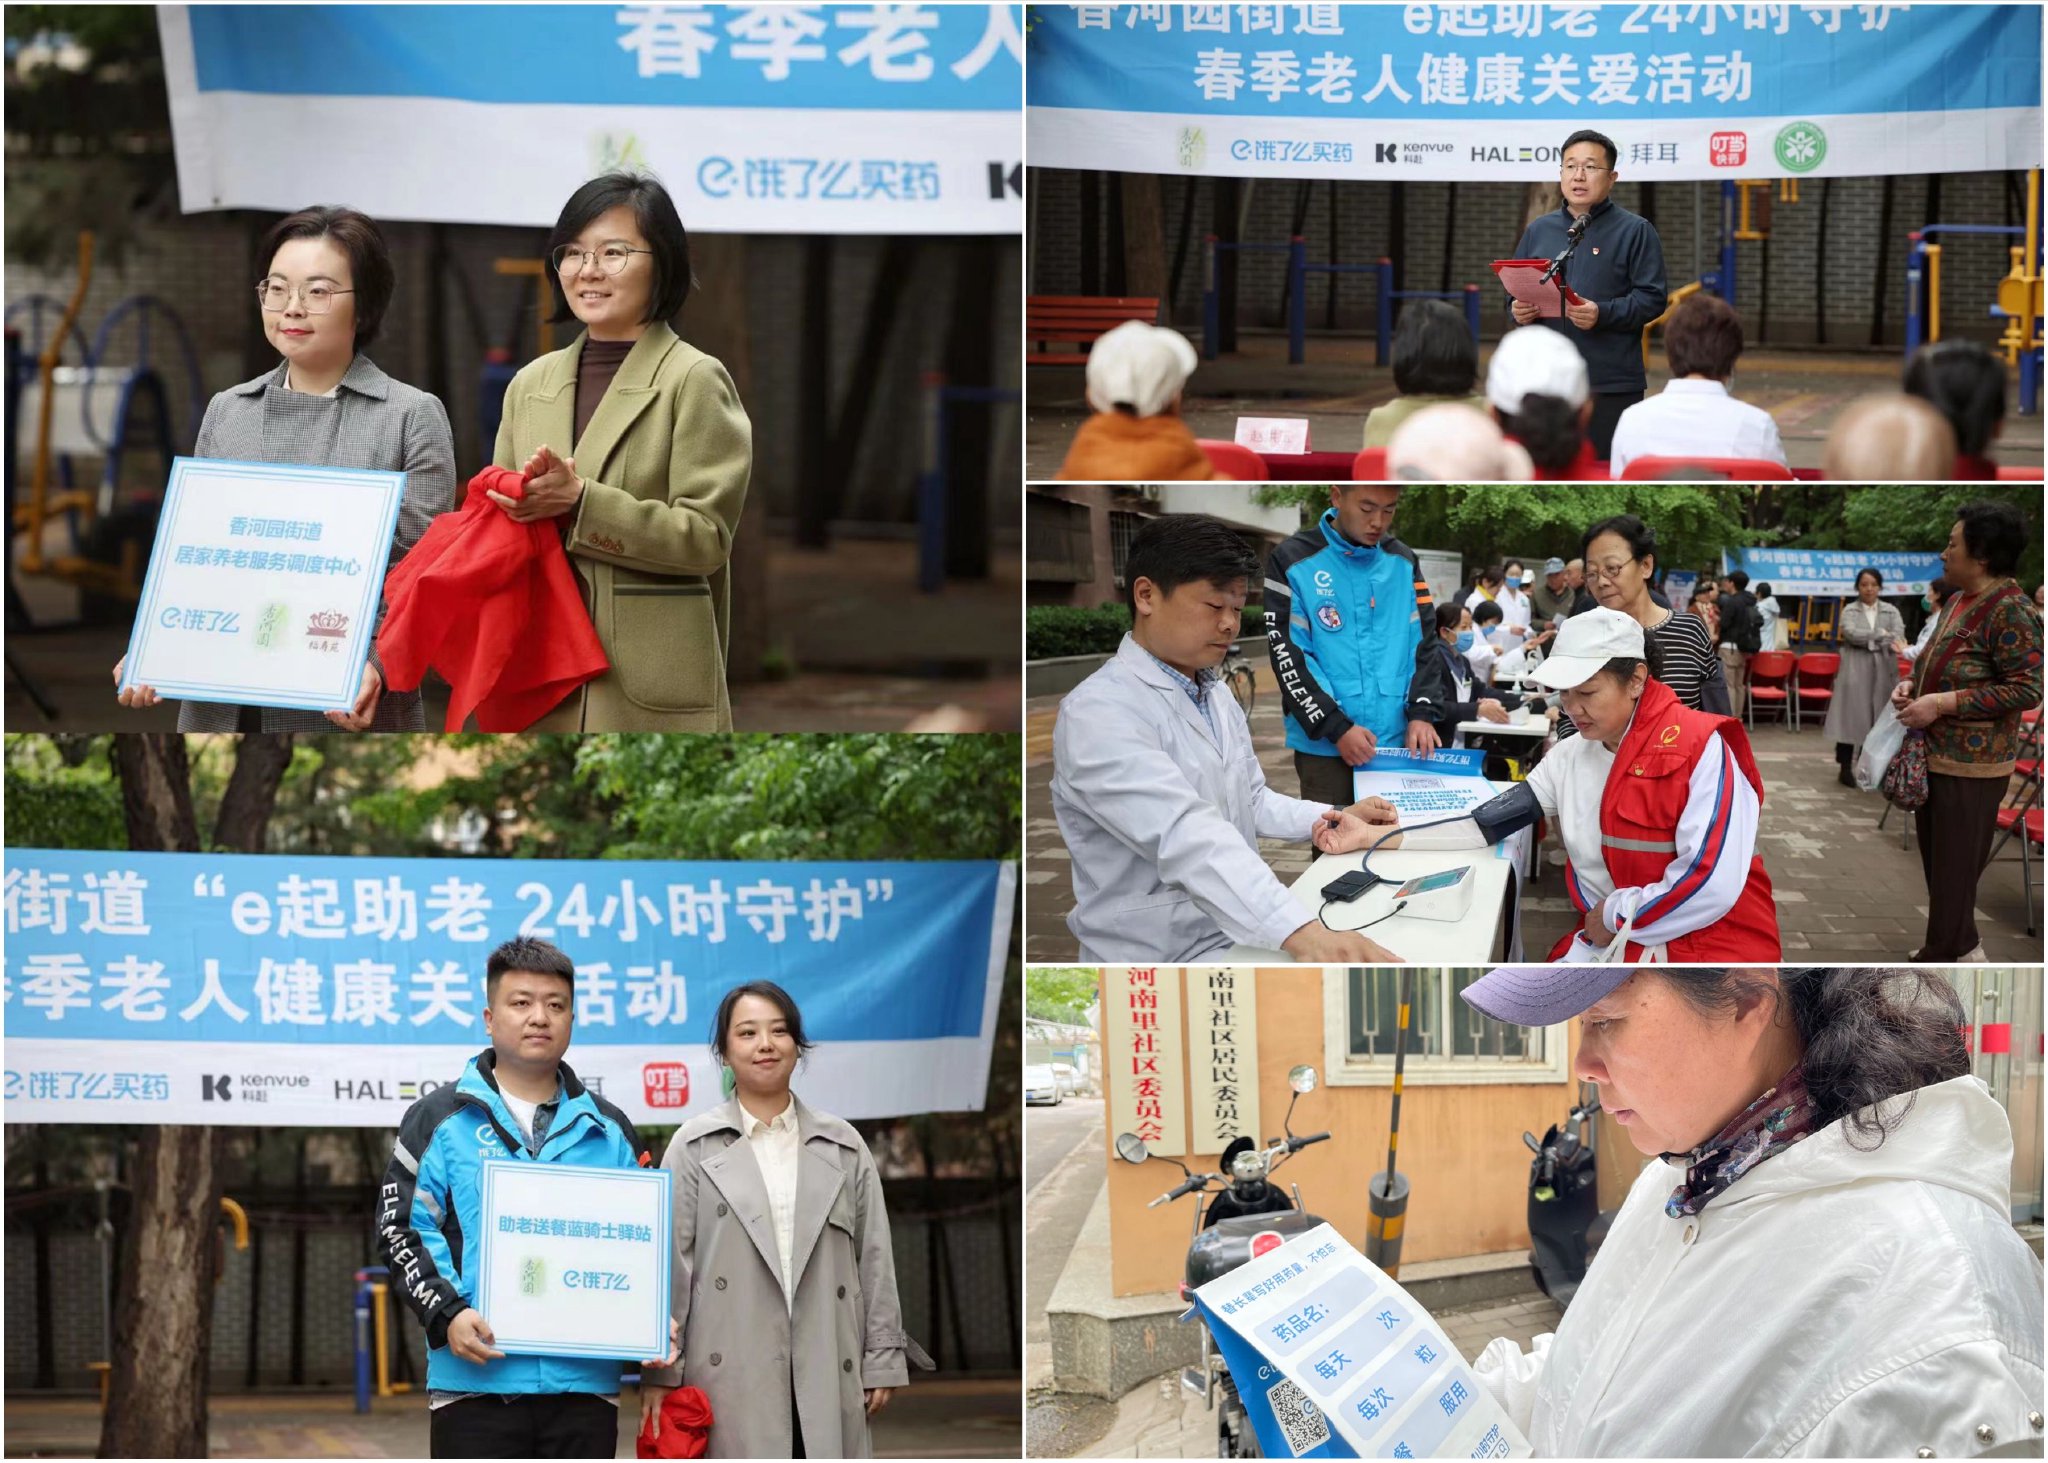 餓了麼聯合北京香河園街道共建「小藍燈放心社區」。 受訪者供圖